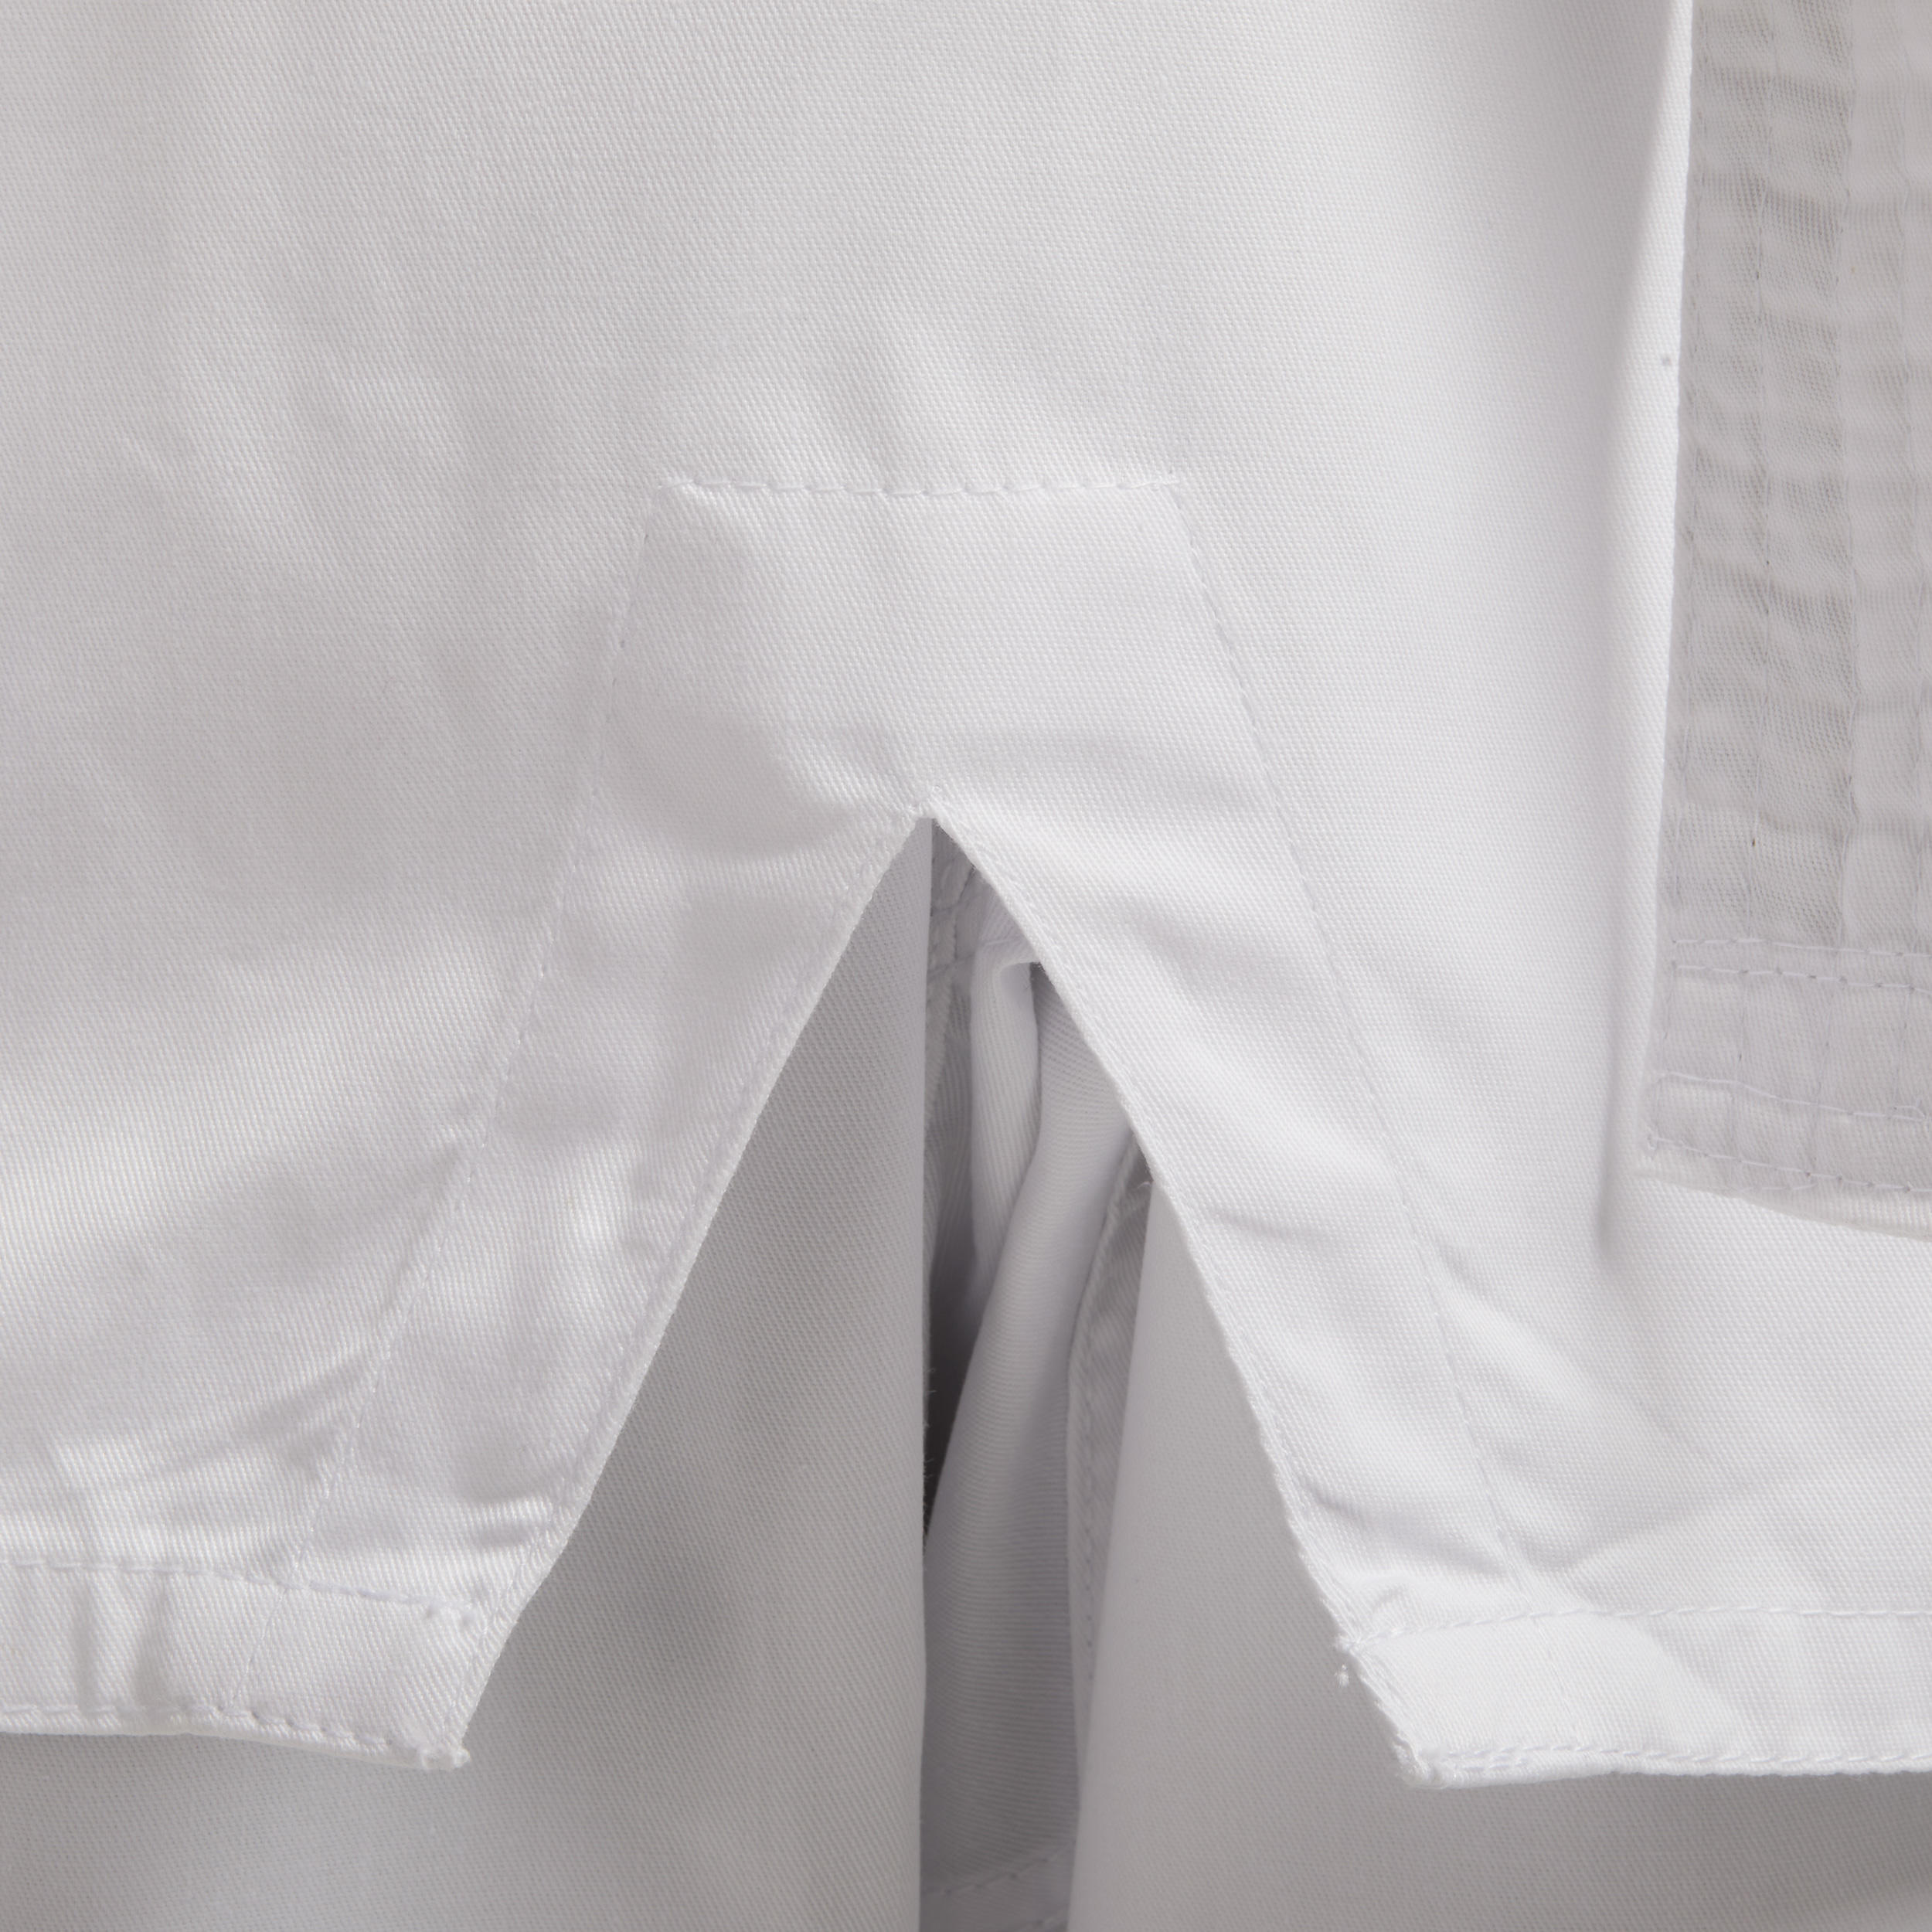 100 Kids' Taekwondo Dobok Uniform - White 7/7